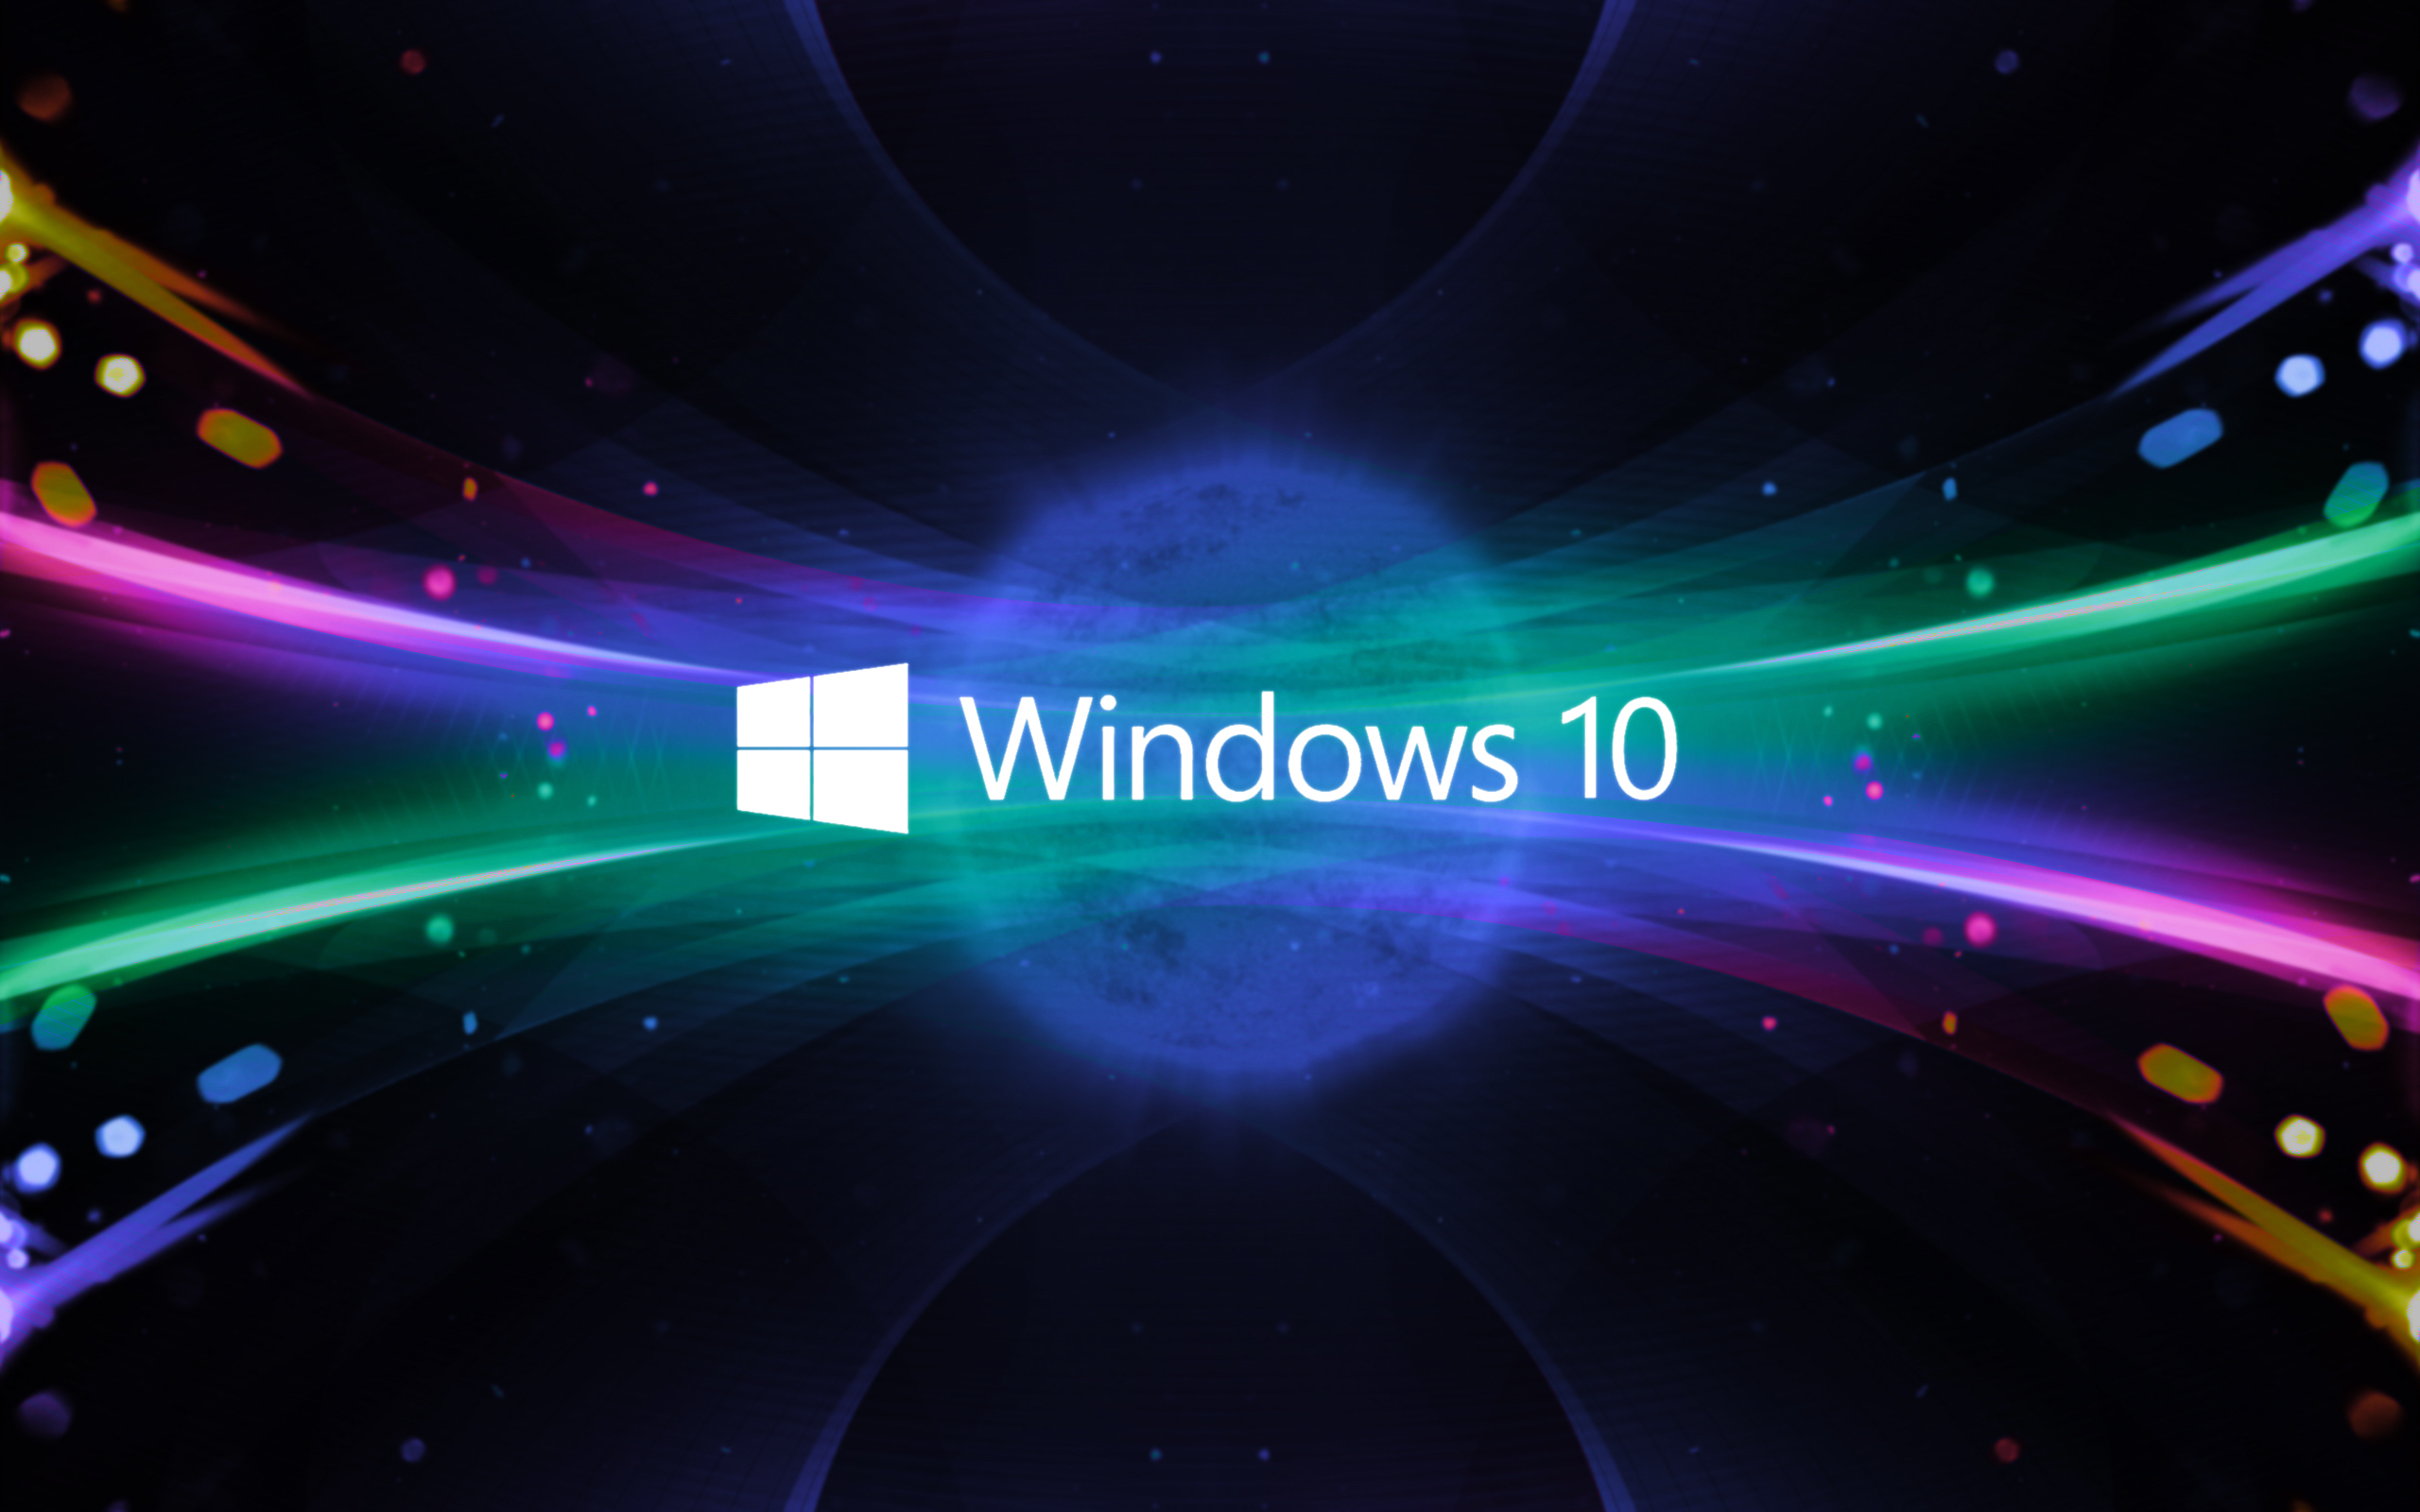 Hãy khám phá hệ điều hành Windows 10 mới nhất của Microsoft, được cải tiến với nhiều tính năng đặc biệt để nâng cao trải nghiệm người dùng. Cùng tìm hiểu và trải nghiệm ngay hôm nay nhé!